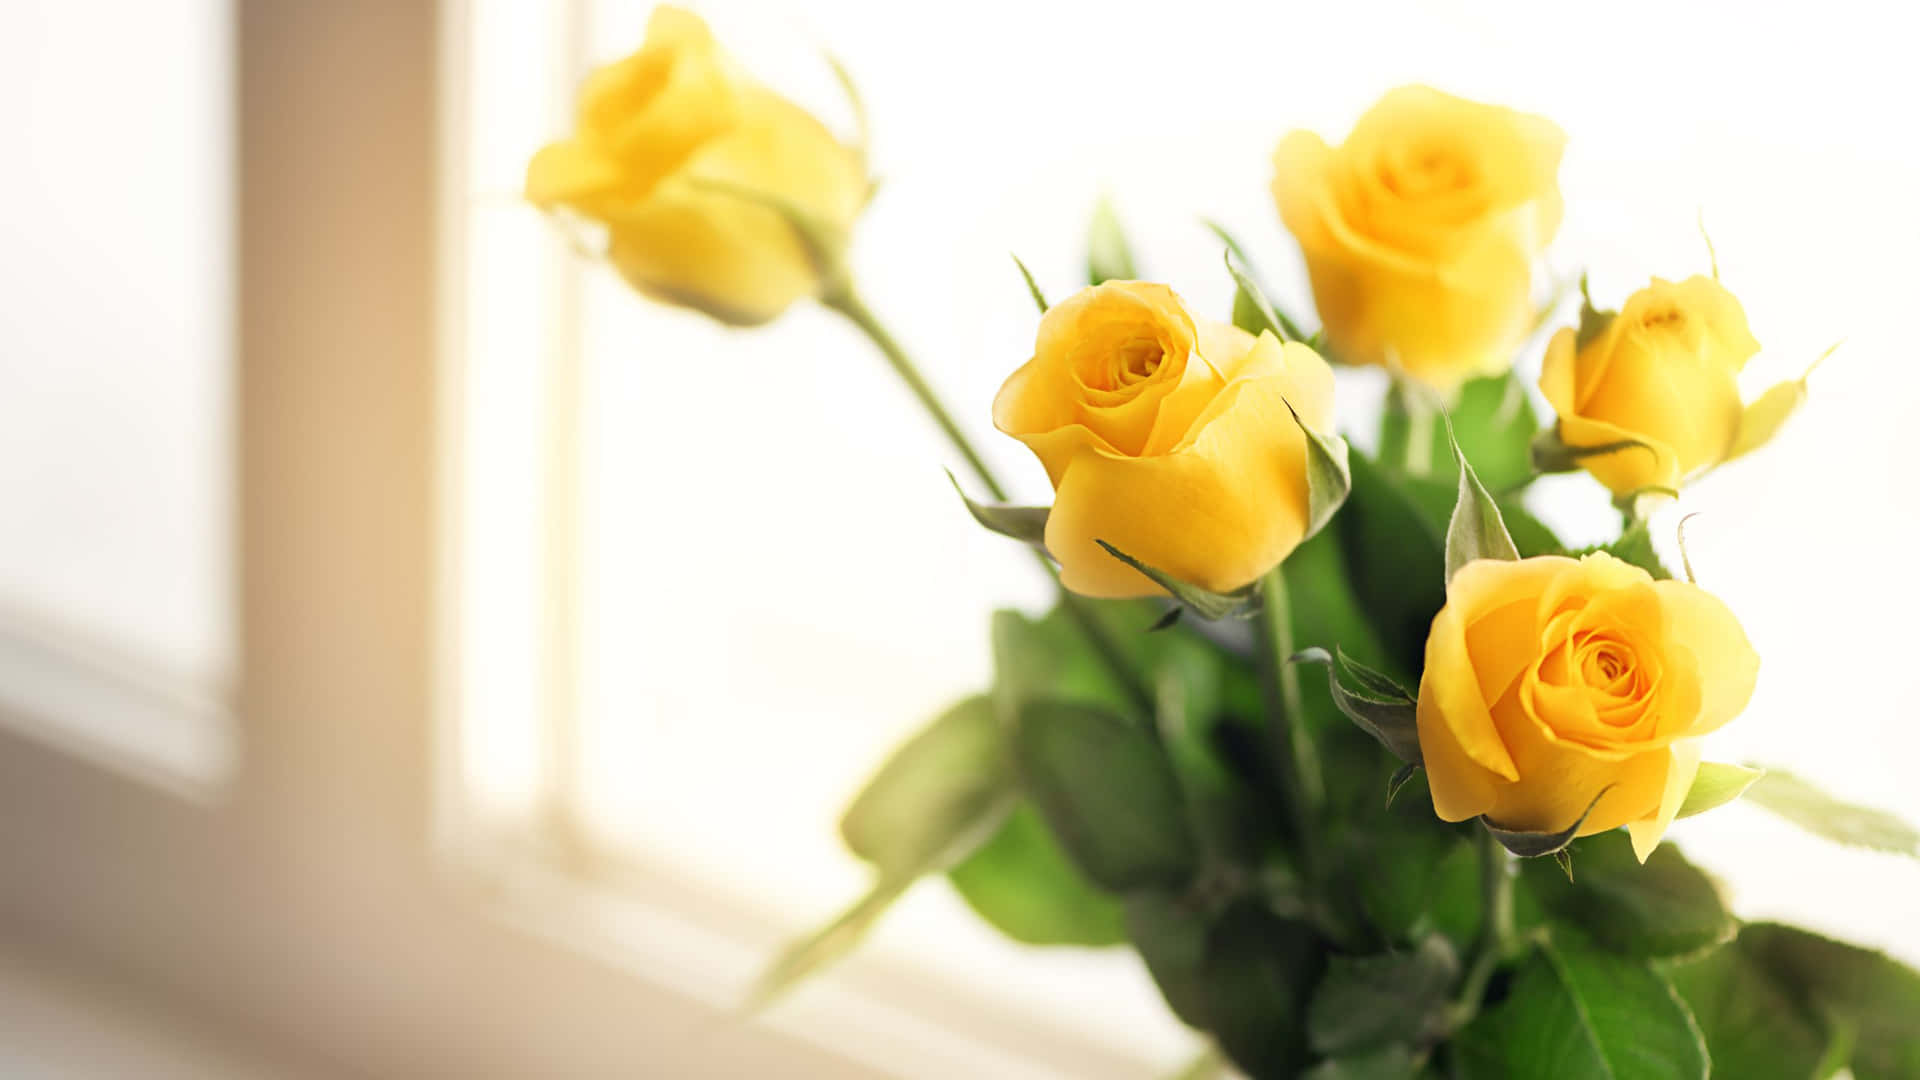 Roser ved vinduet gul æstetisk blomst skrivebordsbaggrund. Wallpaper